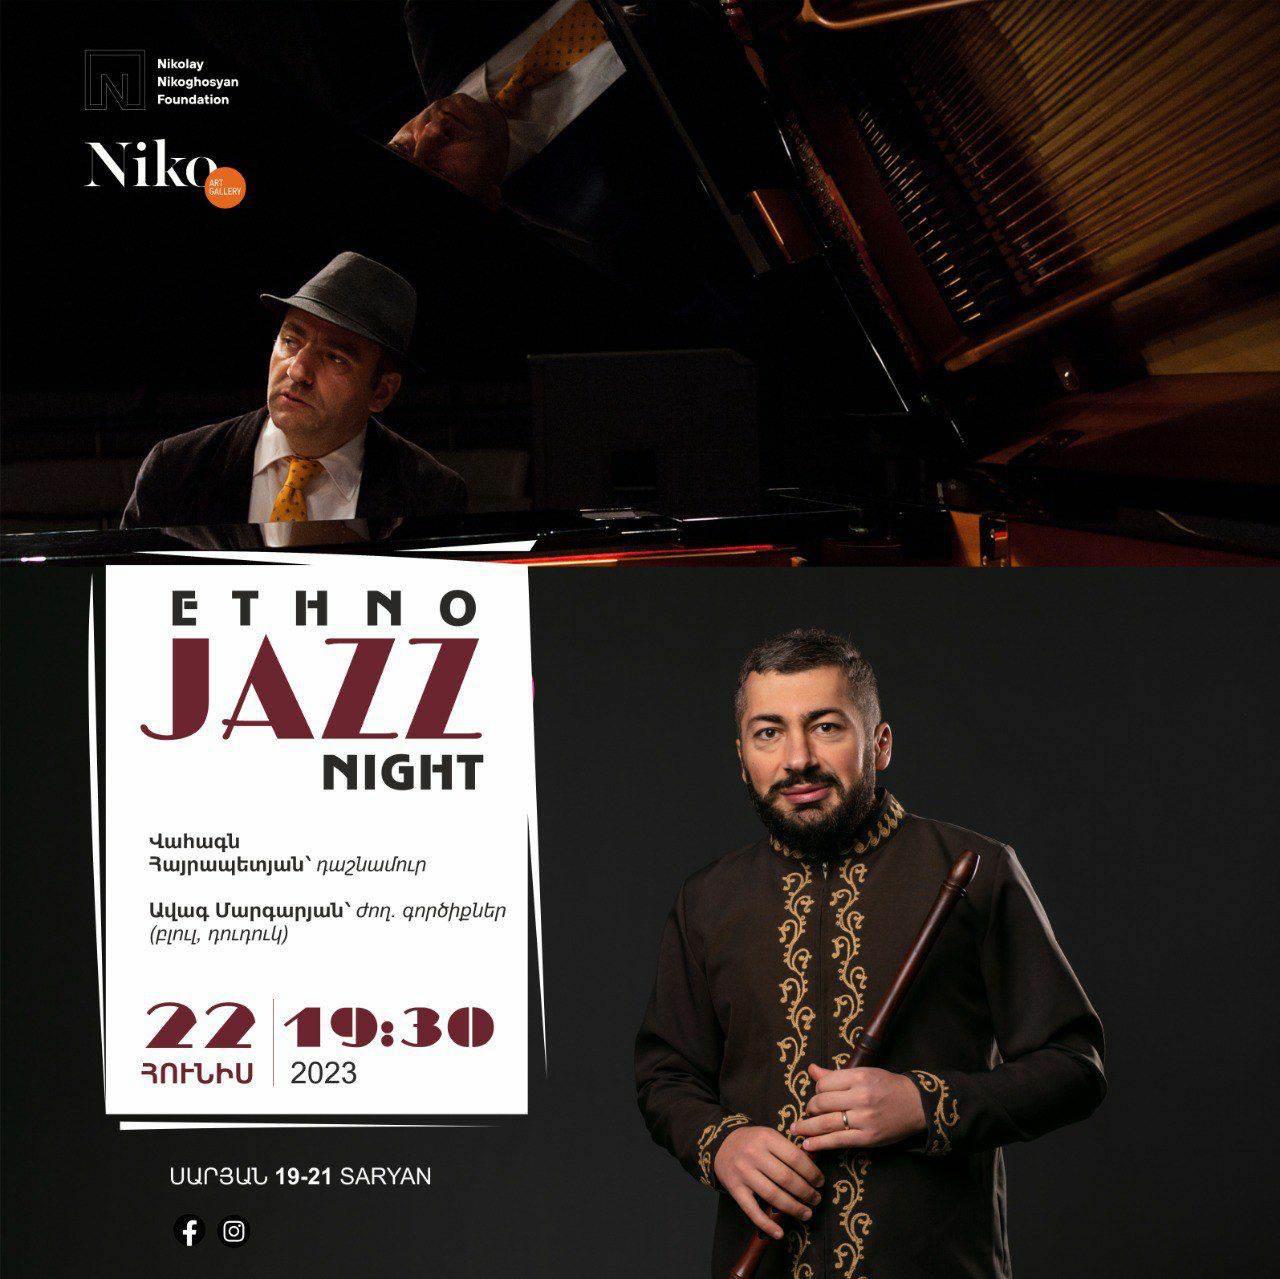 Ethno jazz night. Վահագն Հայրապետյանն ու Ավագ Մարգարյանը հանդես կգան համերգով